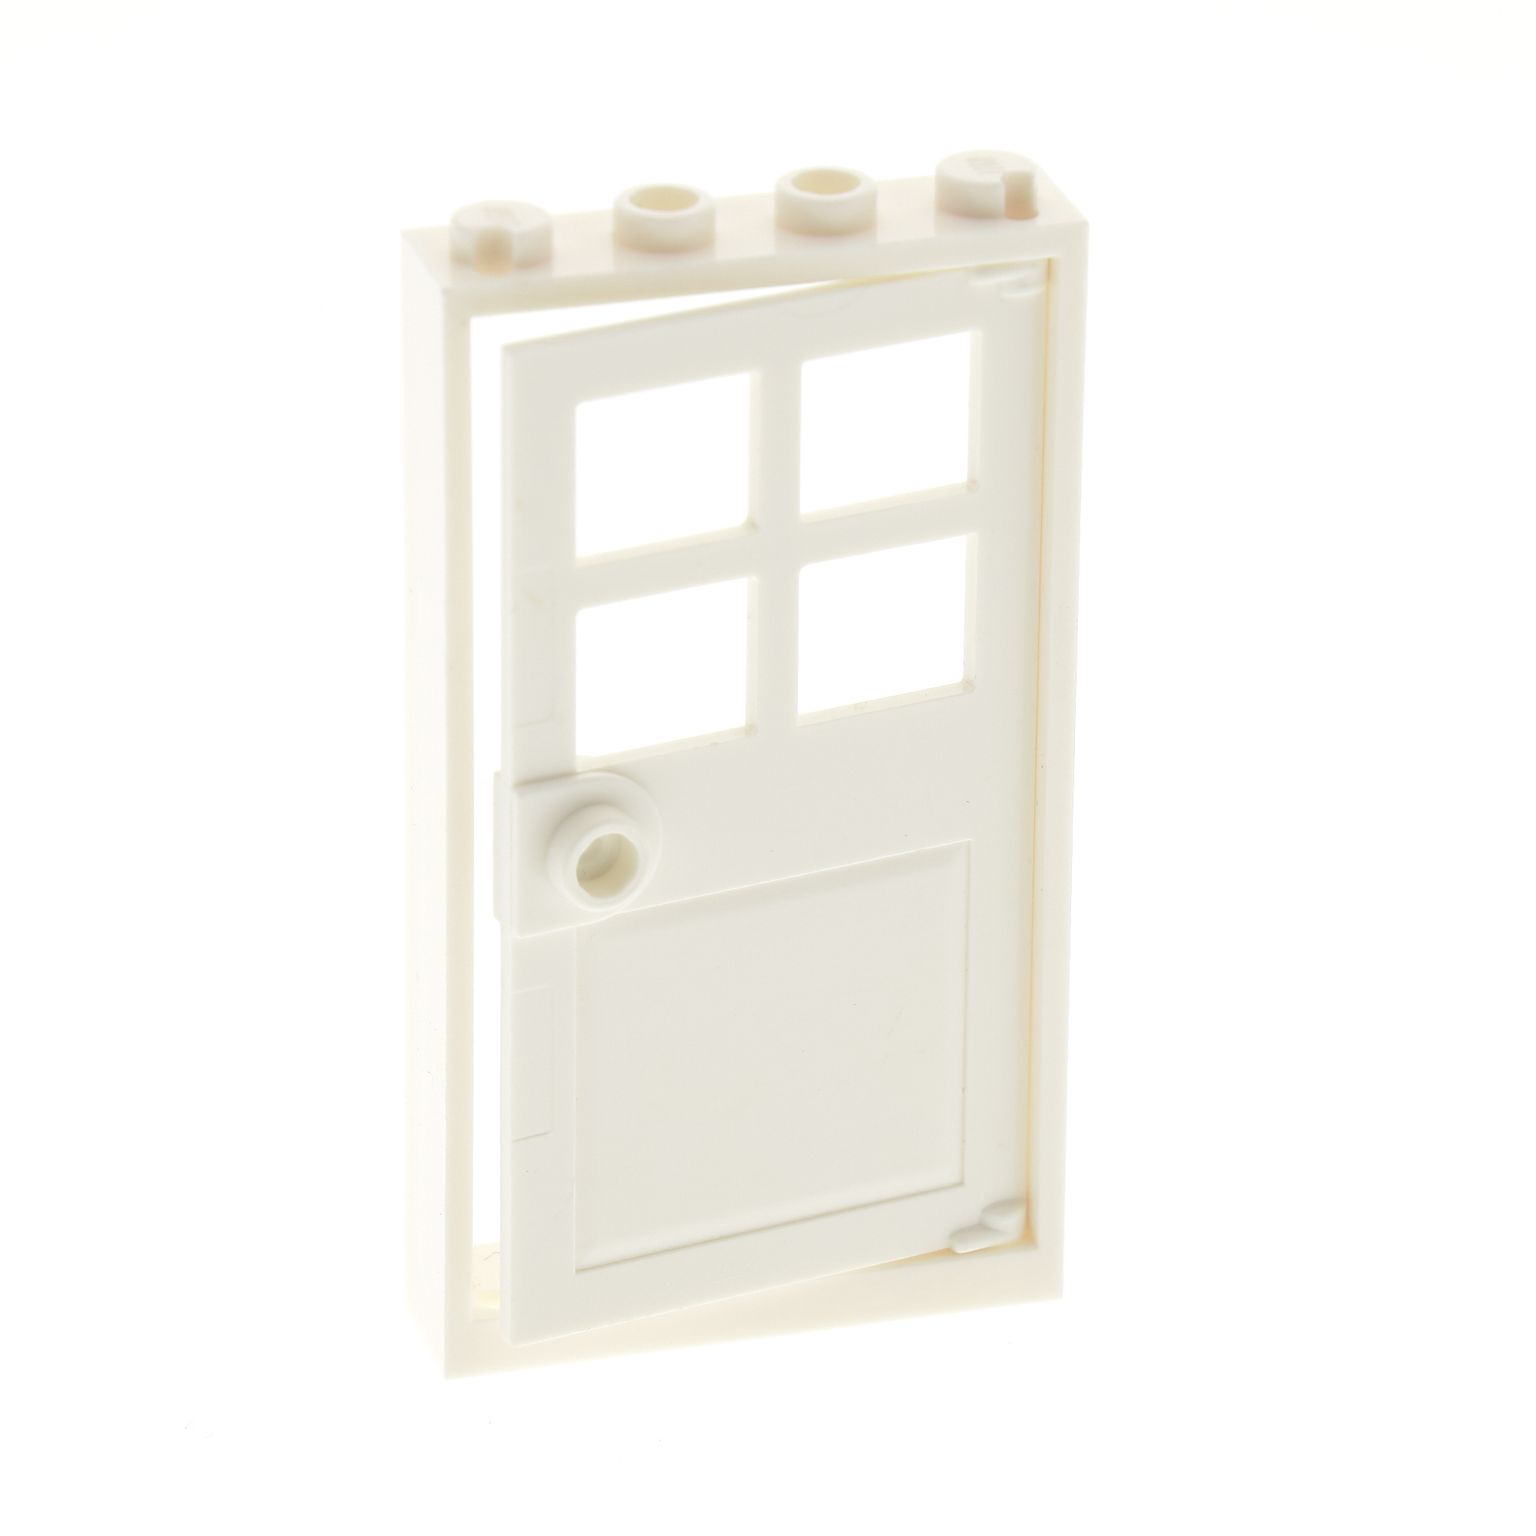 1 x Lego System Tür Blatt schwarz 1x4x5 rechts transparent weiss mit 6 Fenster G 